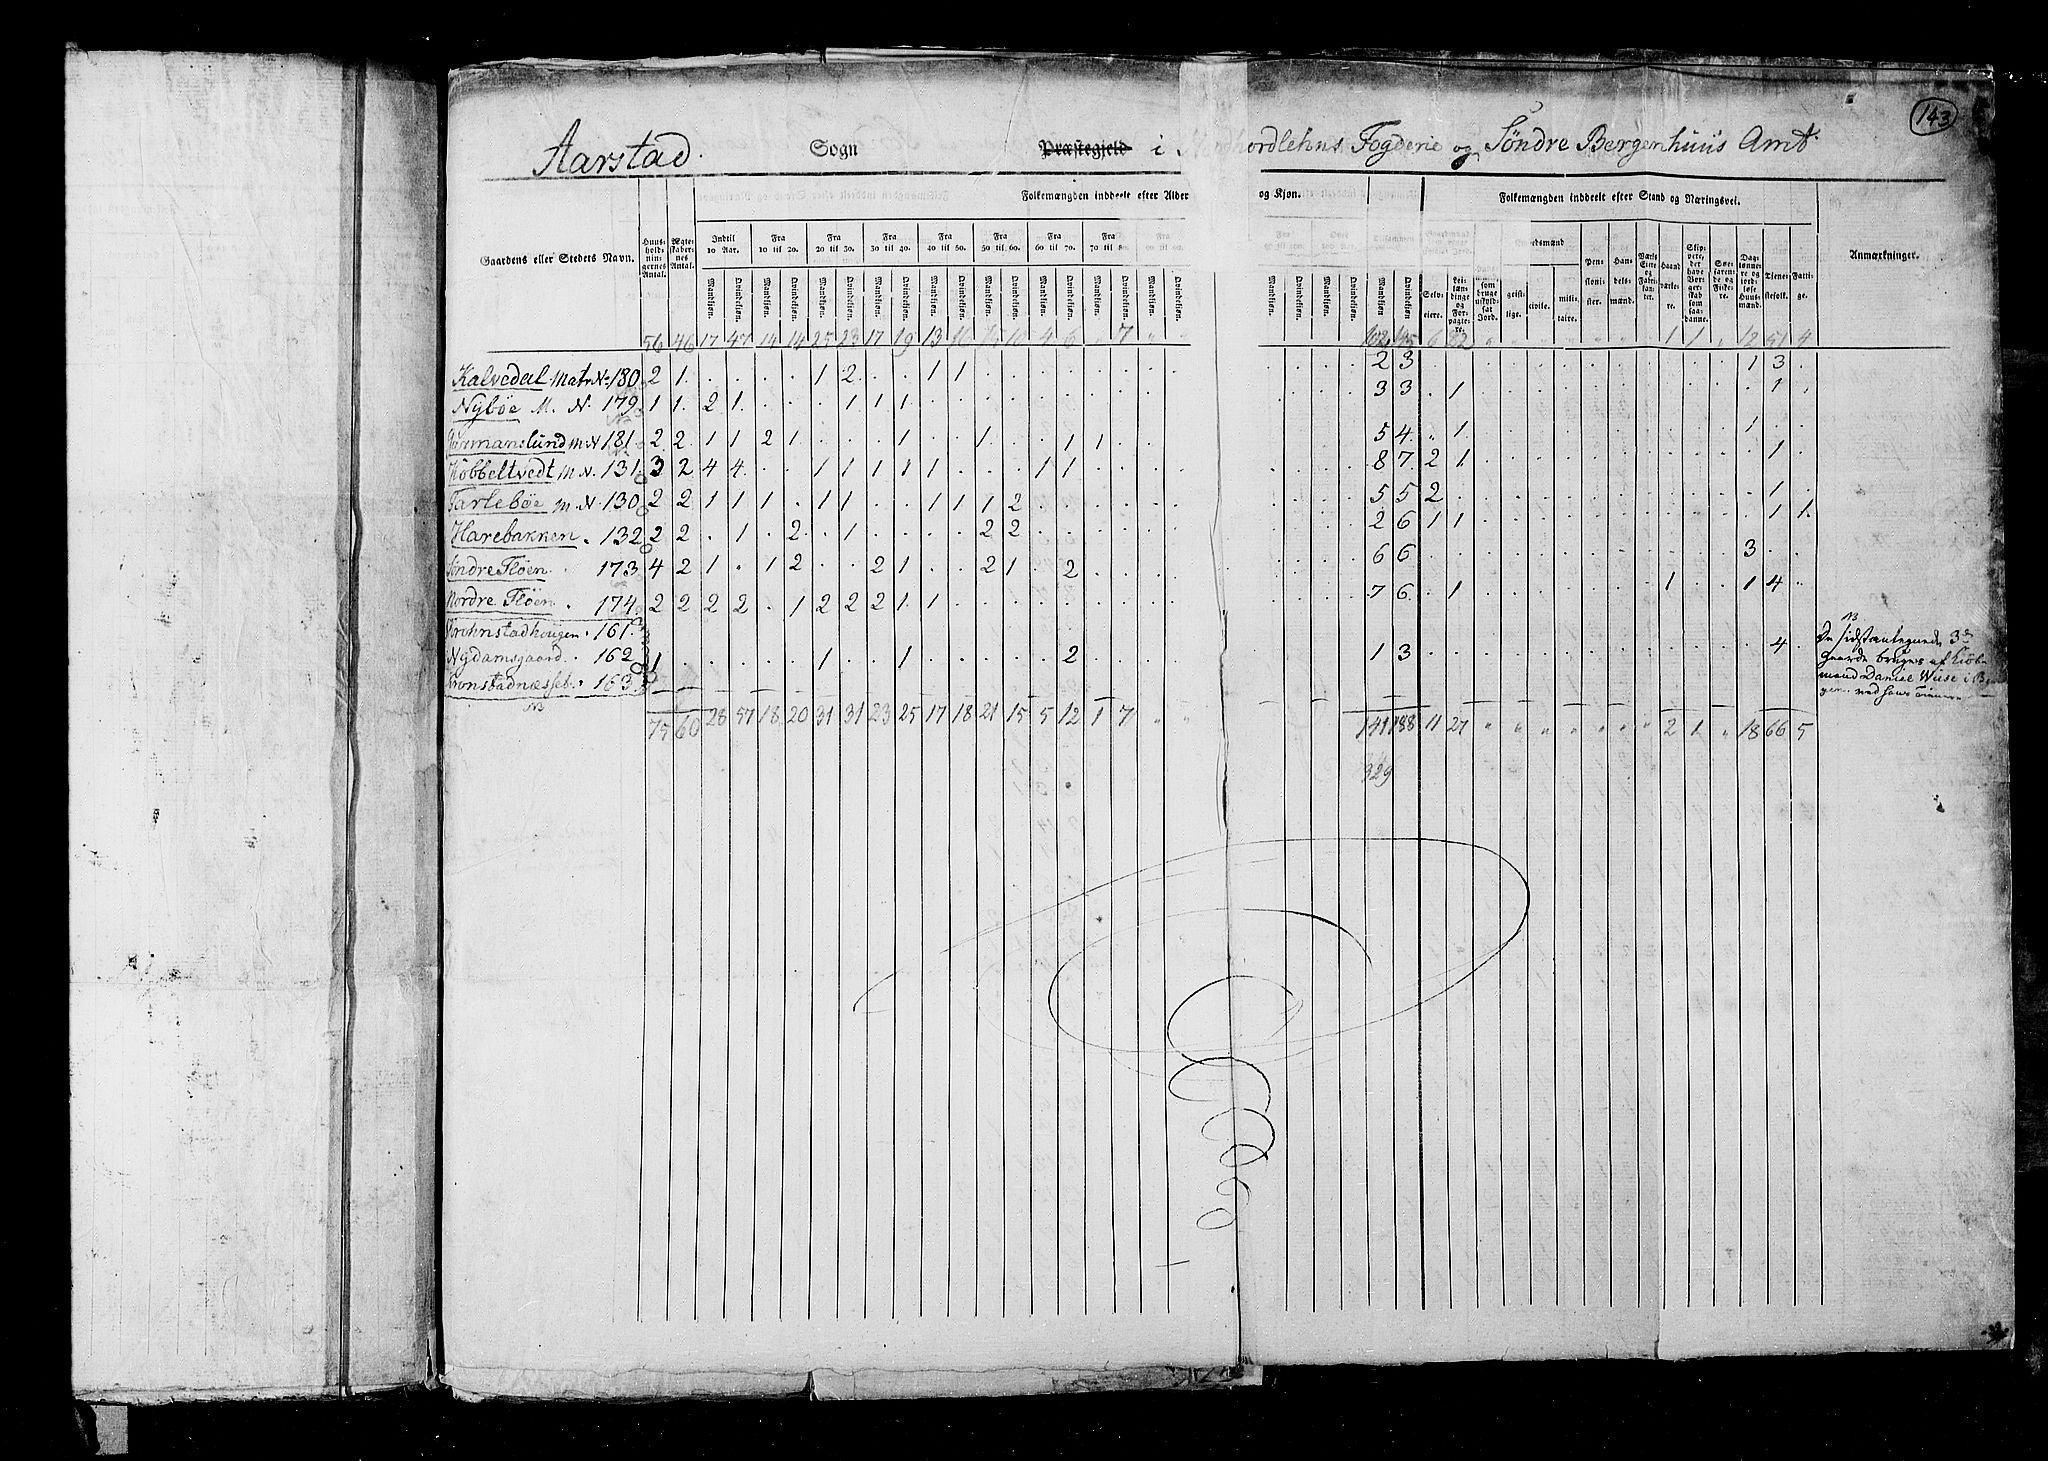 RA, Census 1825, vol. 13: Søndre Bergenhus amt, 1825, p. 143